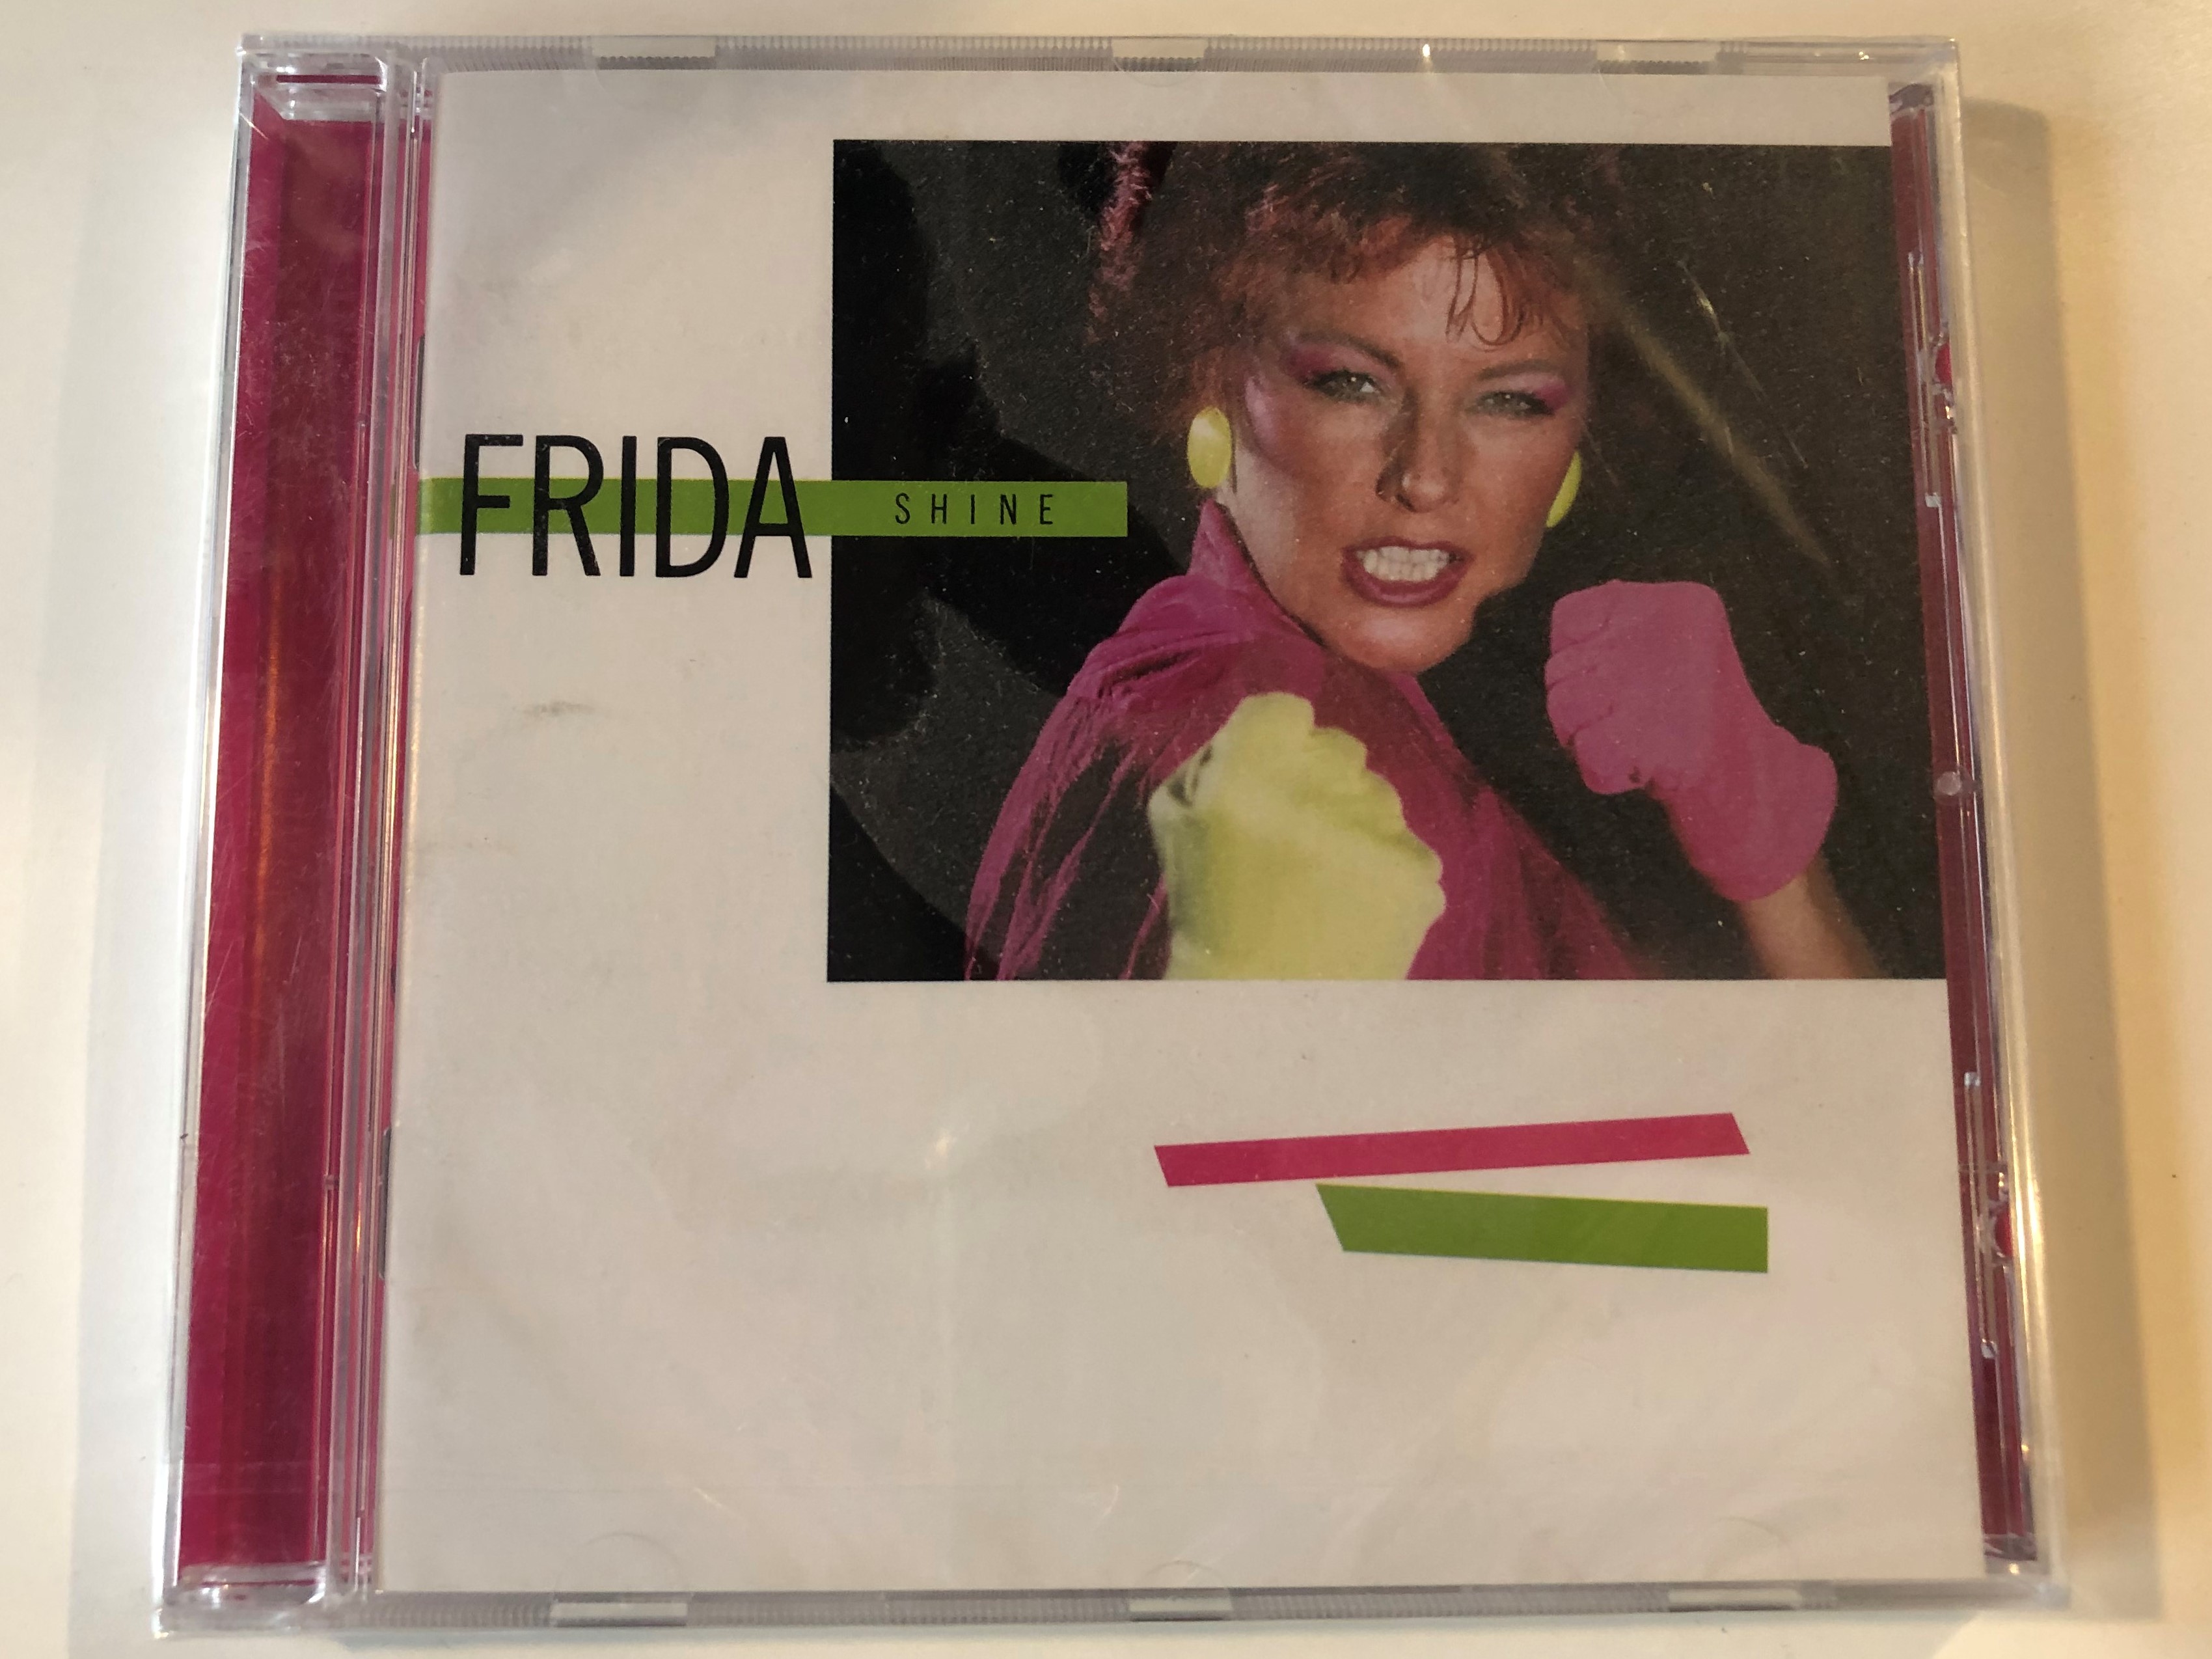 frida-shine-polar-audio-cd-2005-986-877-5-1-.jpg